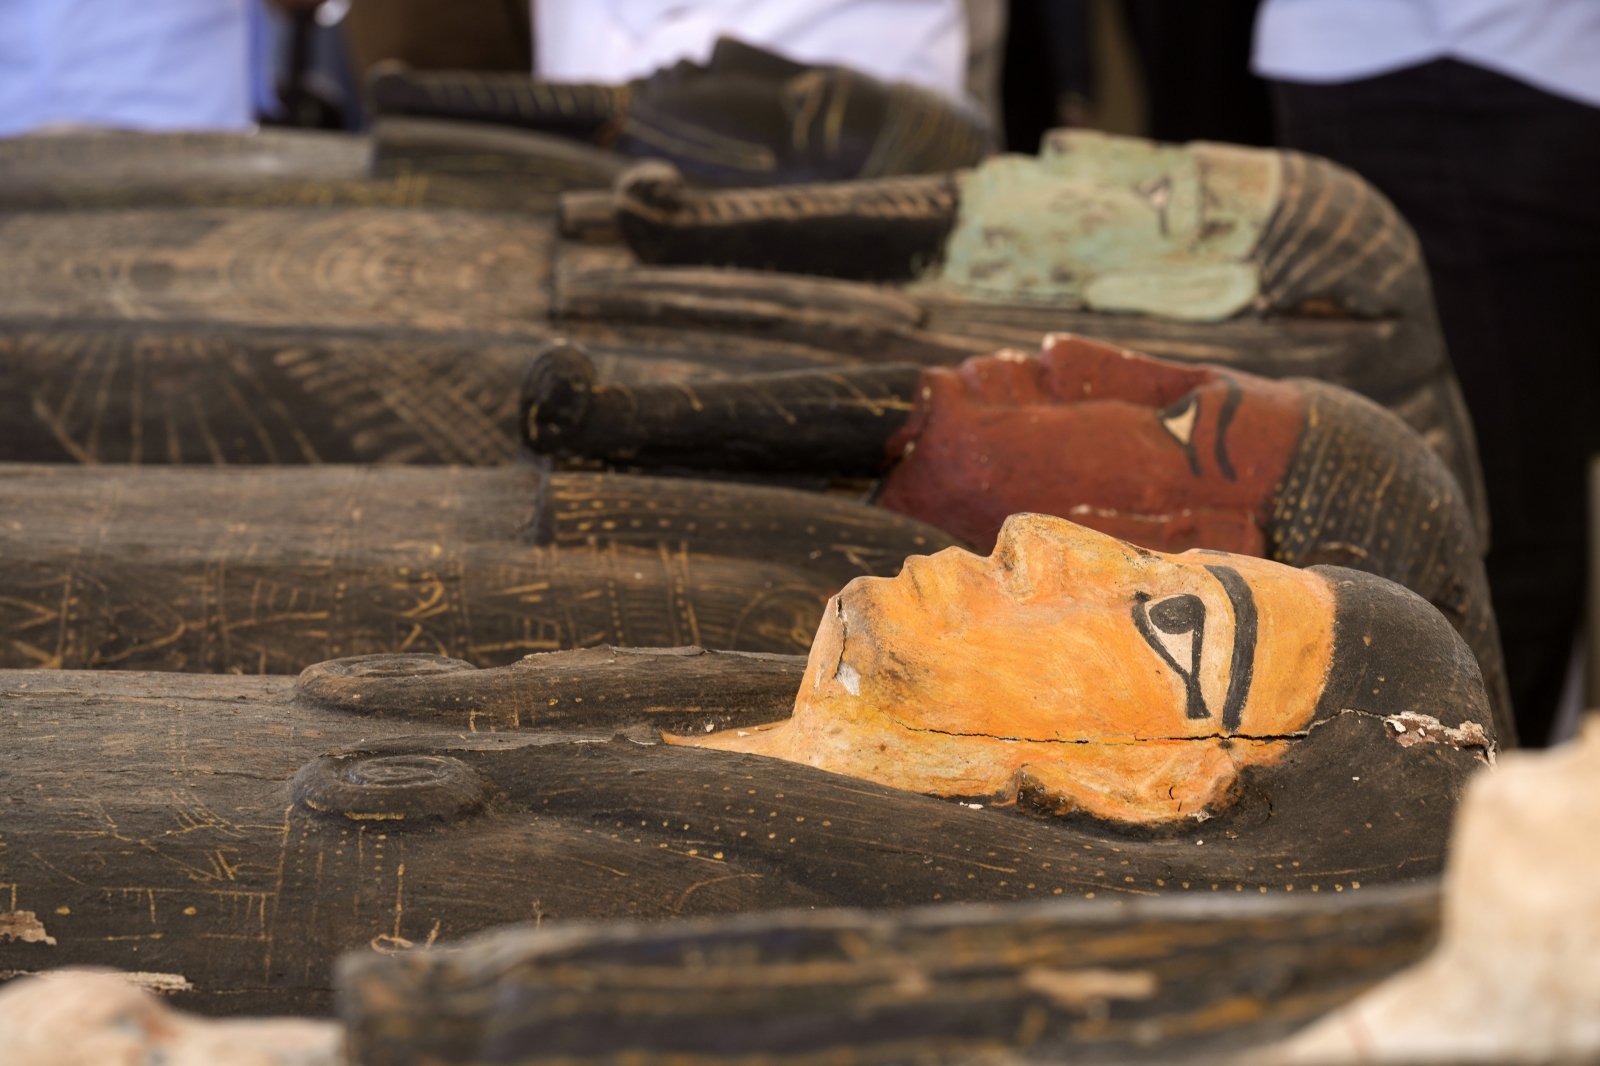 Arkeologer har oppdaget en svimlende skatt i Egypt – hundrevis av sarkofager, mumier av katter og gullbelagte statuer av guder